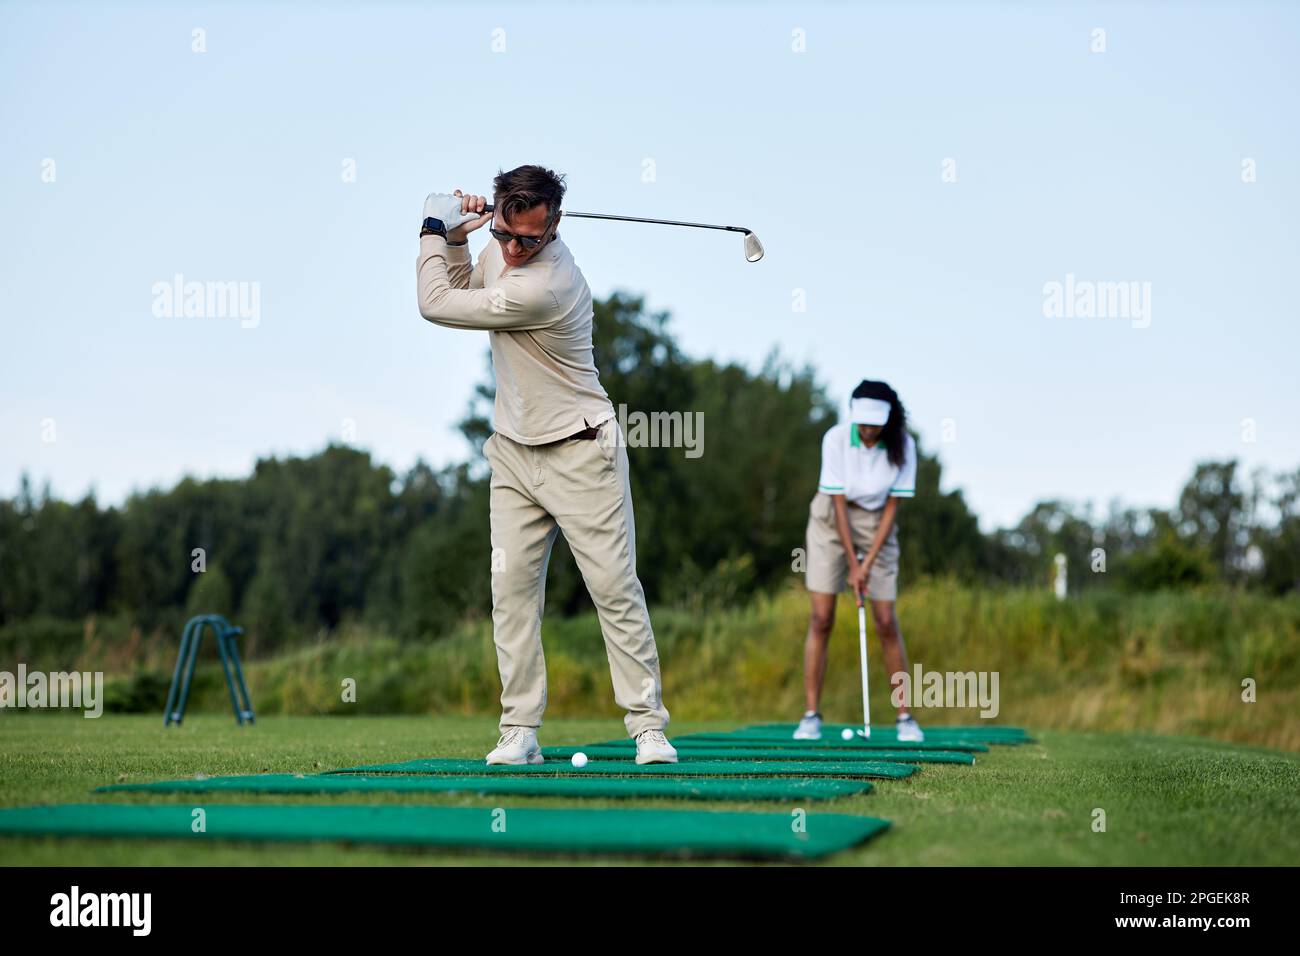 Porträt des sportlichen Mannes, der im Freien Golf spielt, und des Schaukelclubs, während er auf der Plattform steht Stockfoto